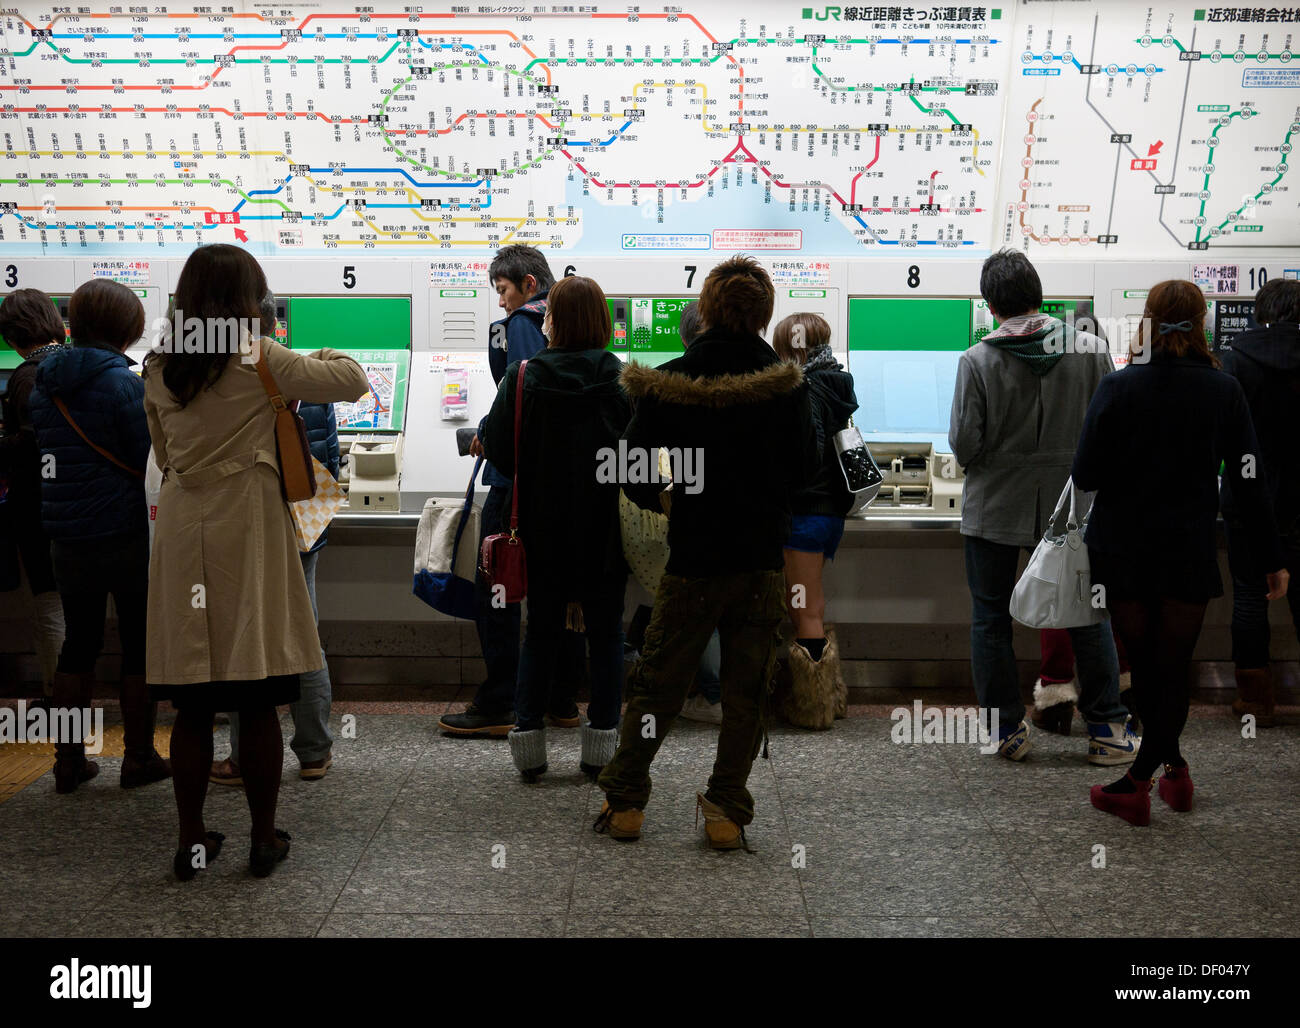 La folla di persone che acquistano i biglietti del treno da distributori automatici alla Stazione JR di Yokohama stazione ferroviaria, nella prefettura di Kanagawa, Giappone. Foto Stock